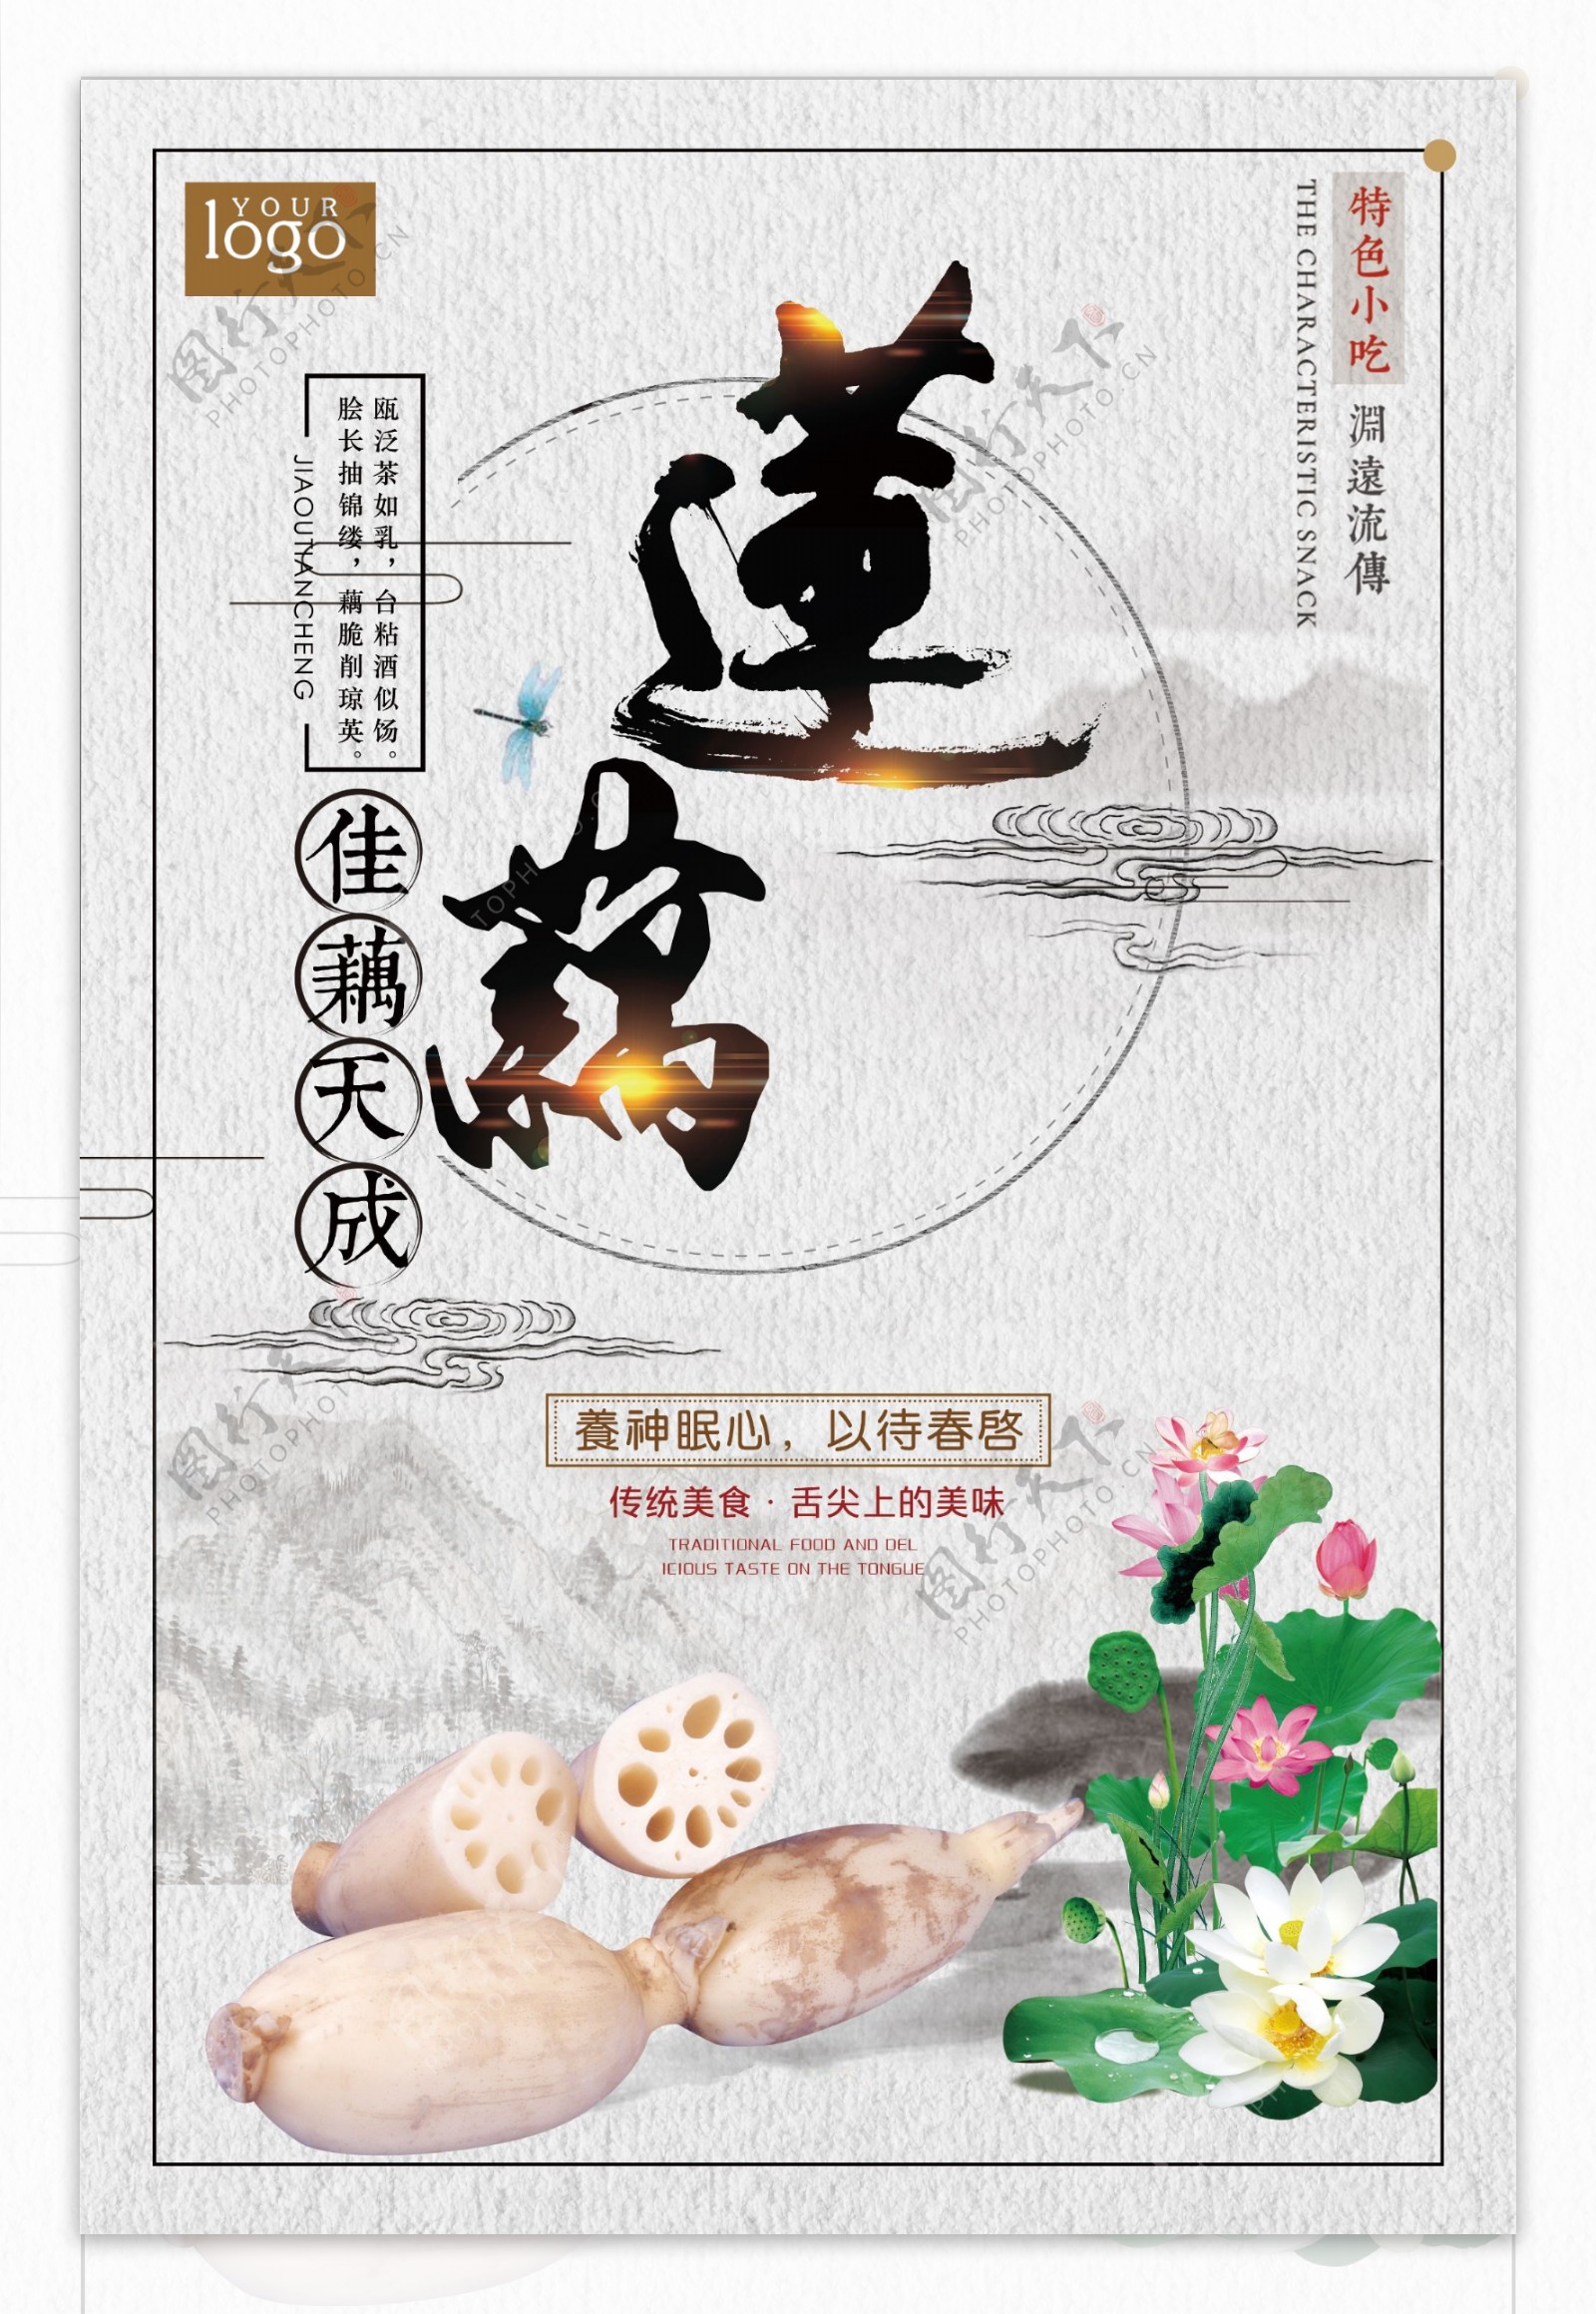 中国风简洁大气莲藕宣传创意海报设计